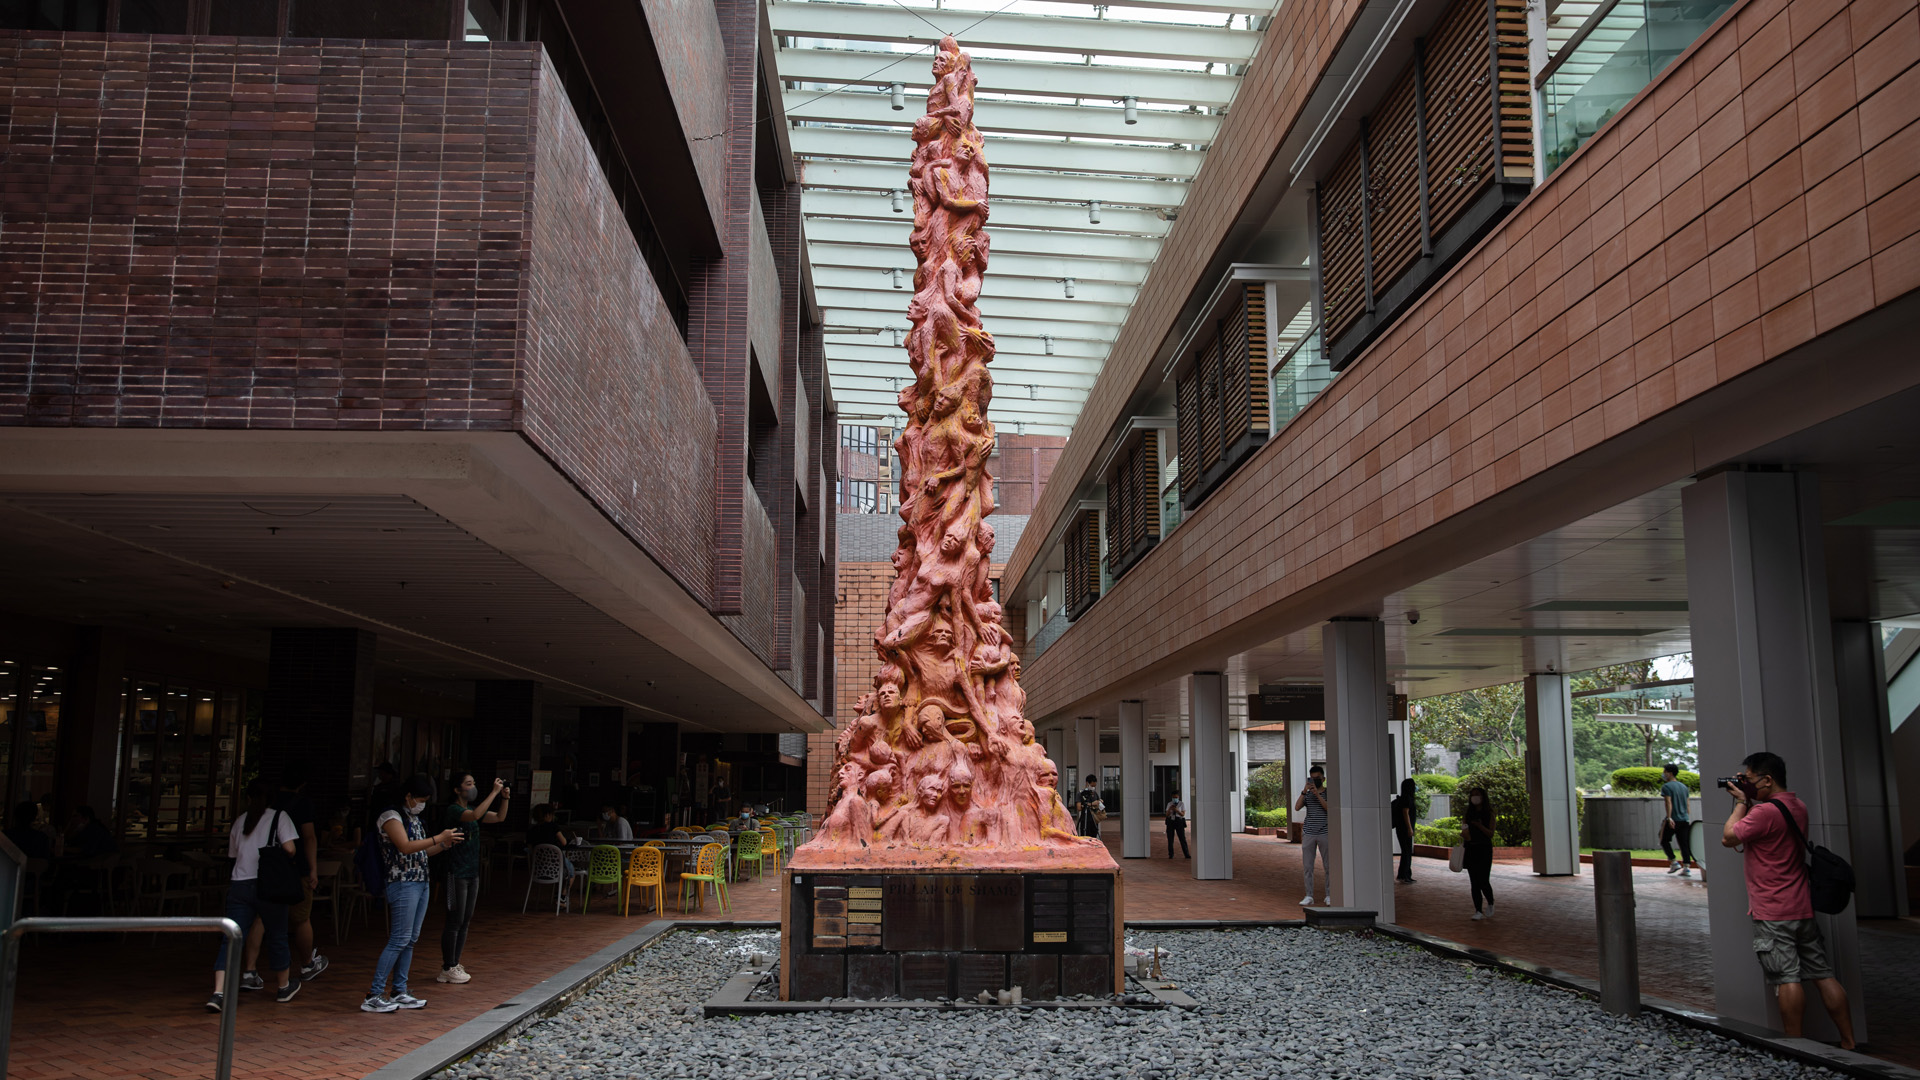 Skulptur "Pillar of Shame" von Jens Galschiot | EPA